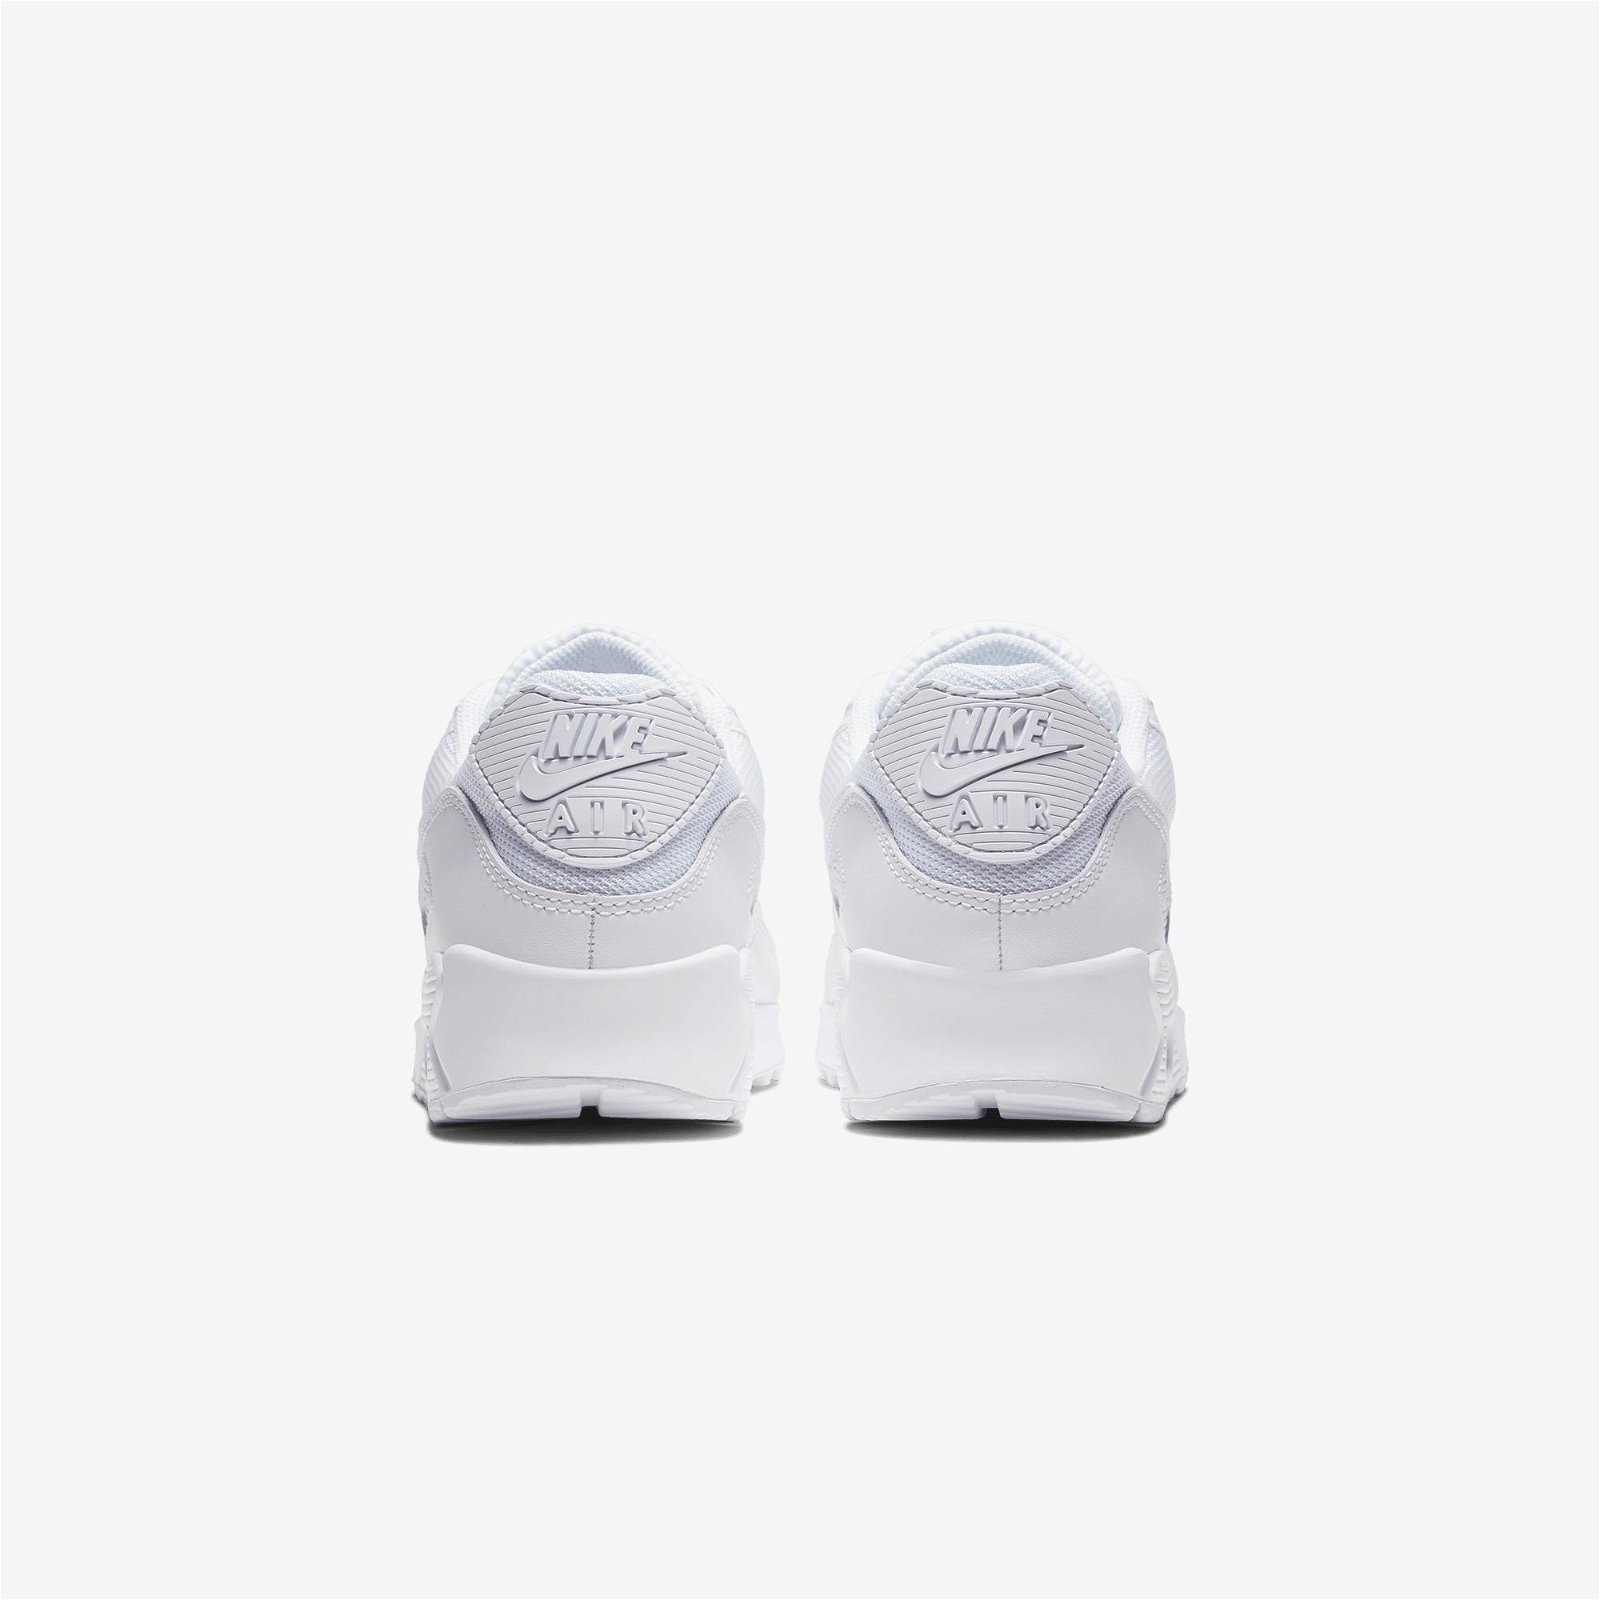  Nike Air Max 90 Beyaz Spor Ayakkabı